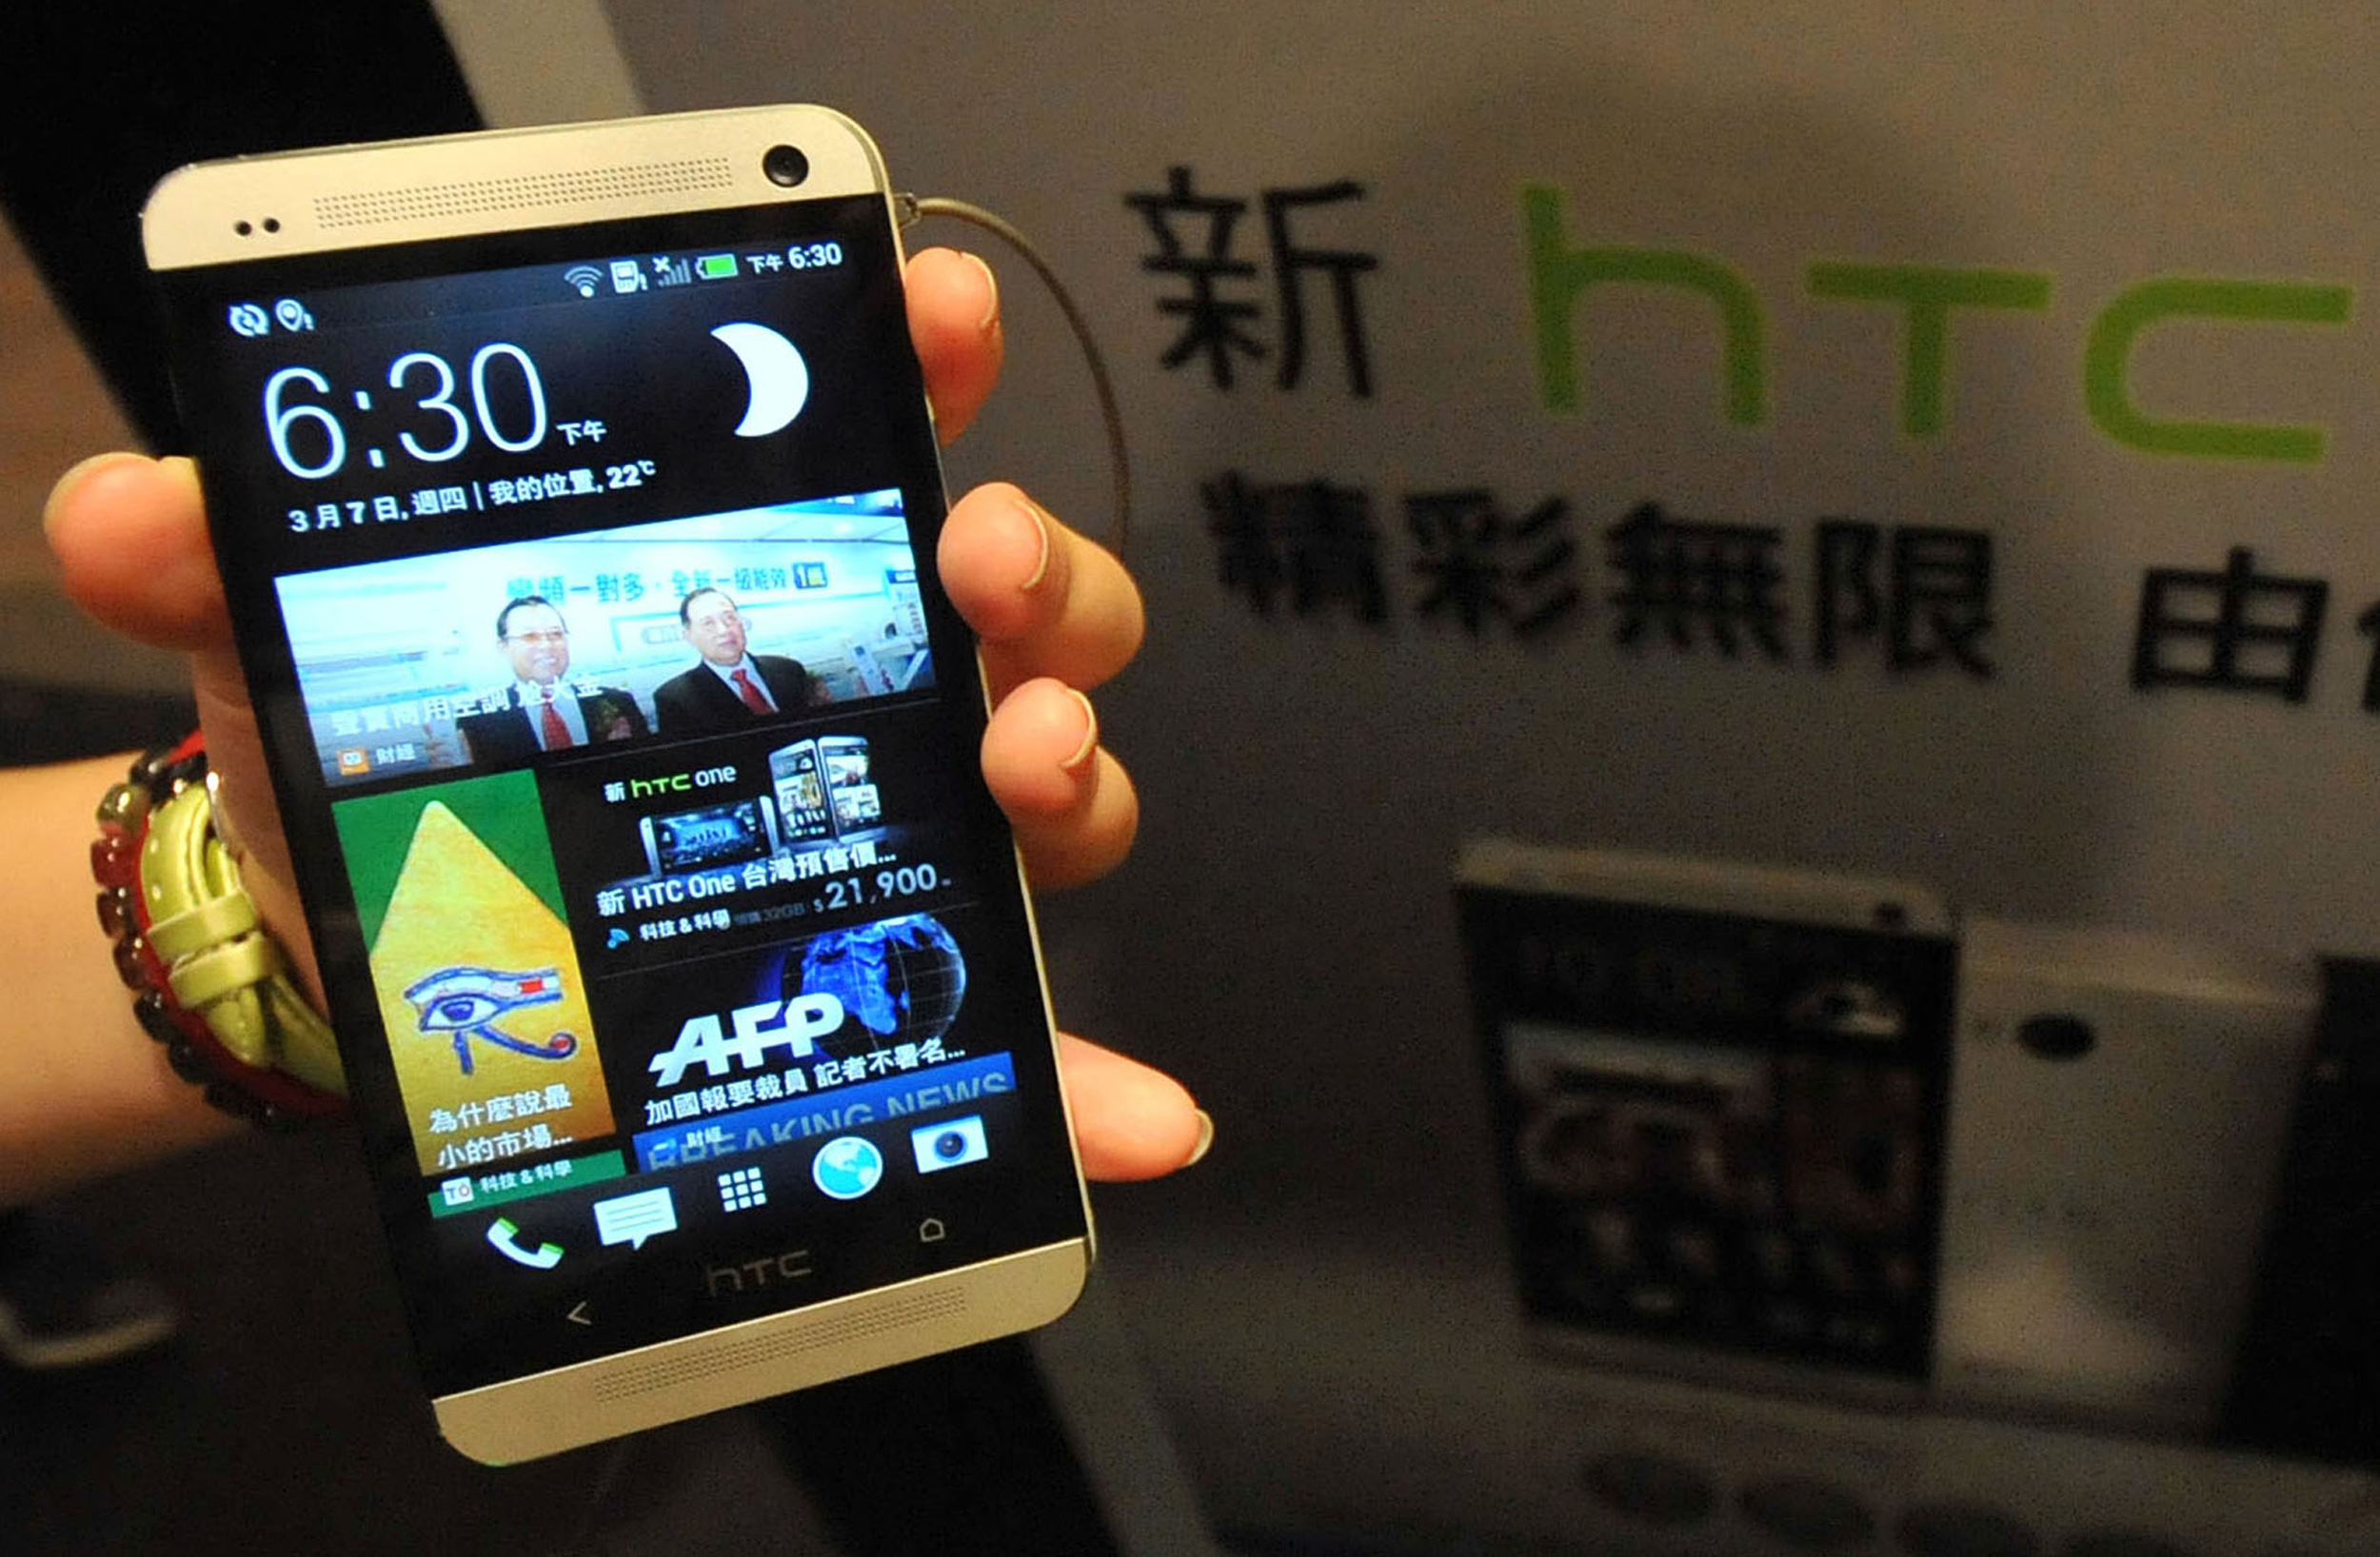 HTC One M8 Eye und HTC Desire Eye Release, Leaks: Details, Fotos im Vorfeld des heutigen NY-Launchs (8. Oktober) geleakt?